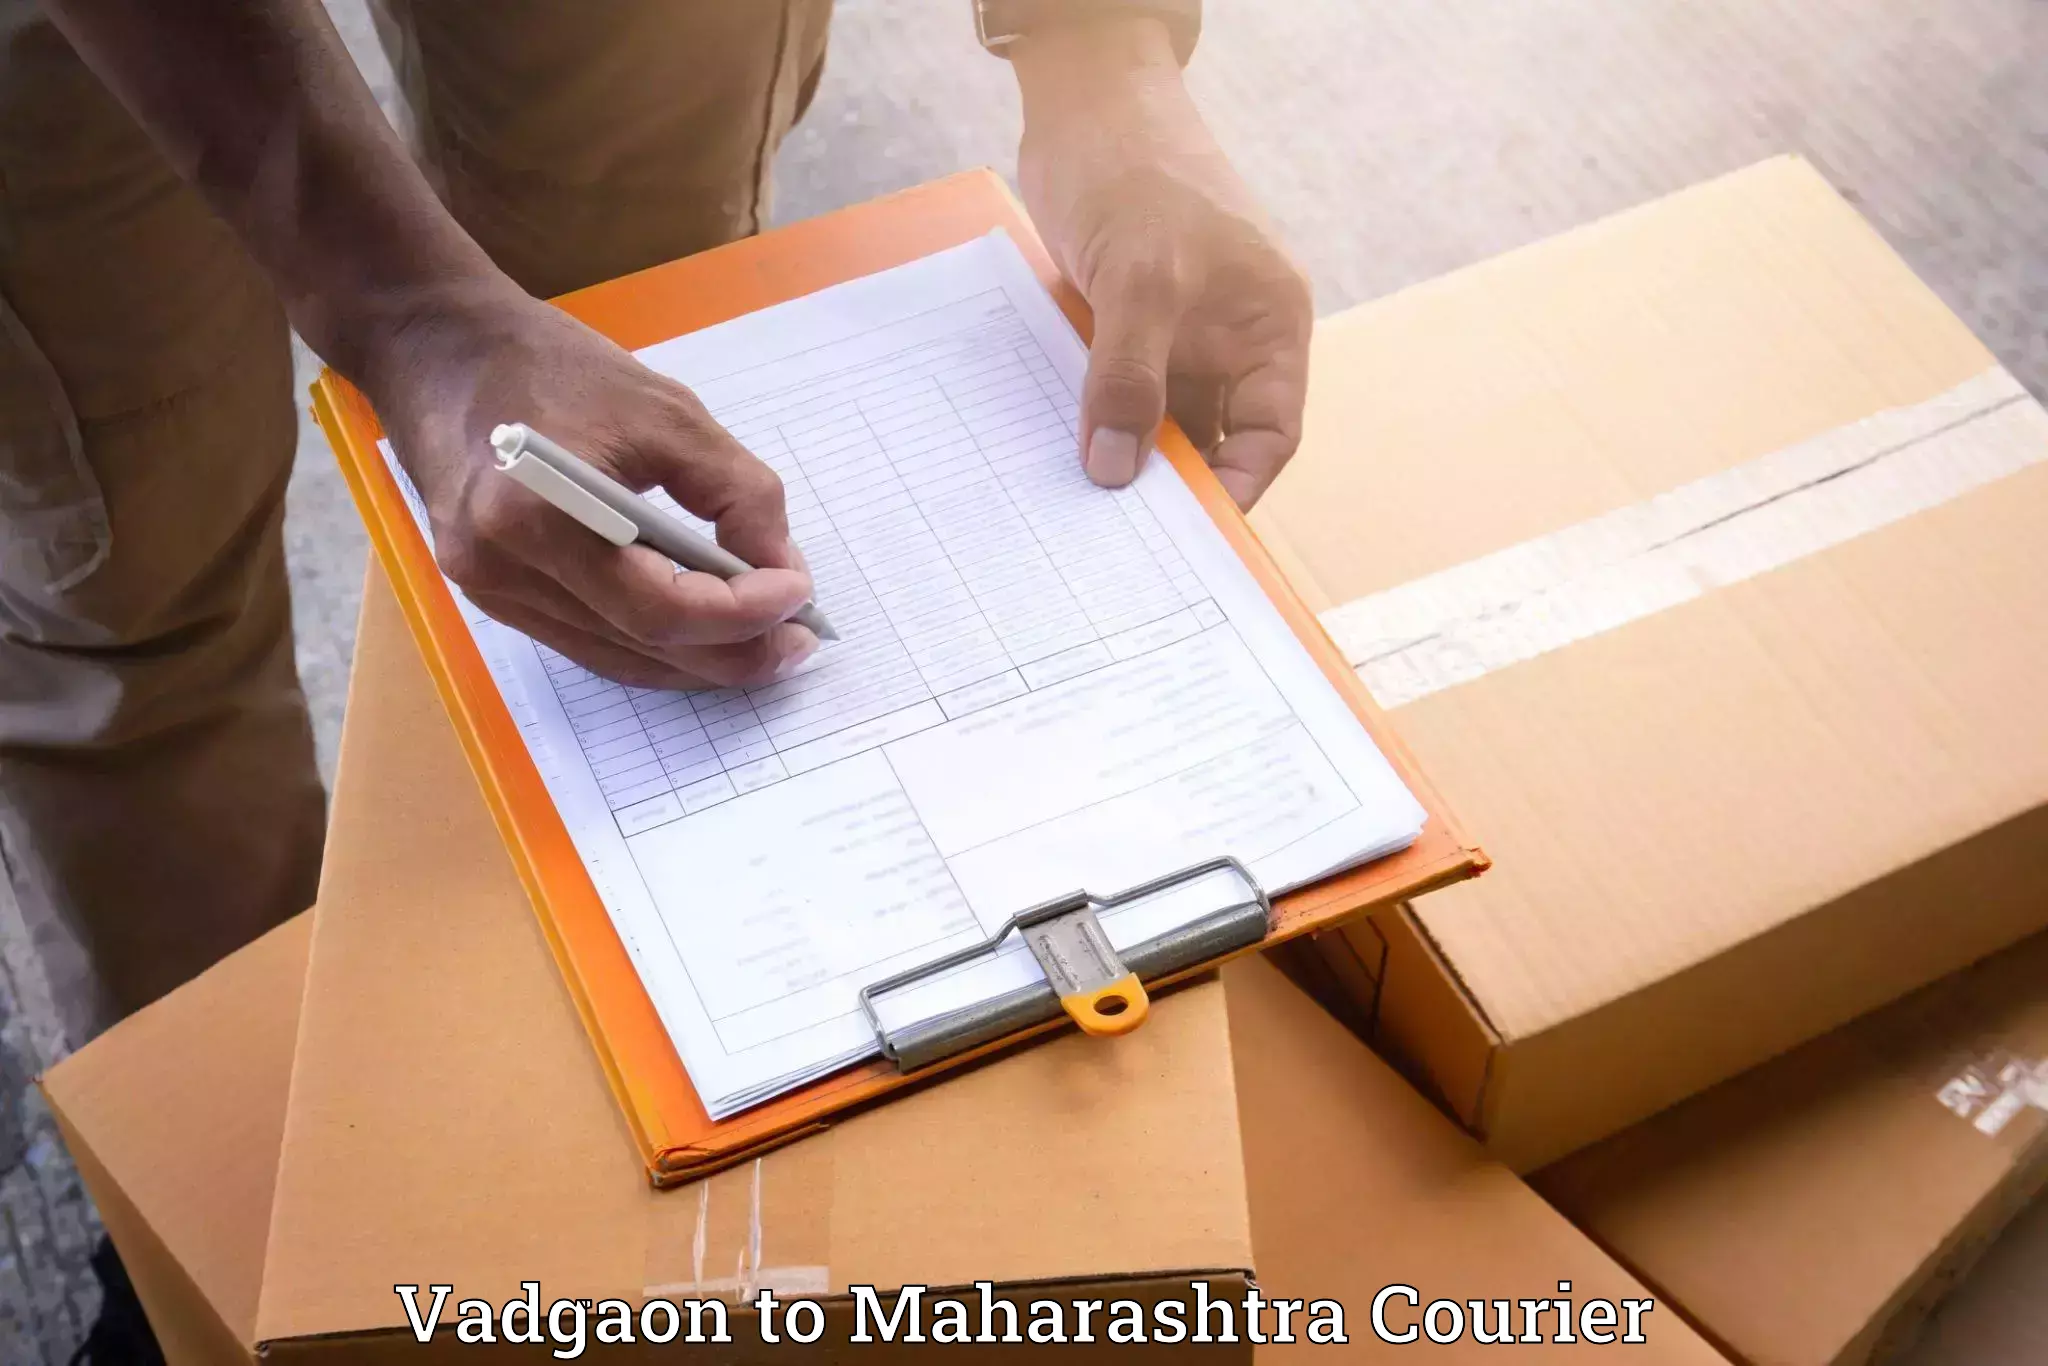 Full-service relocation Vadgaon to Maharashtra